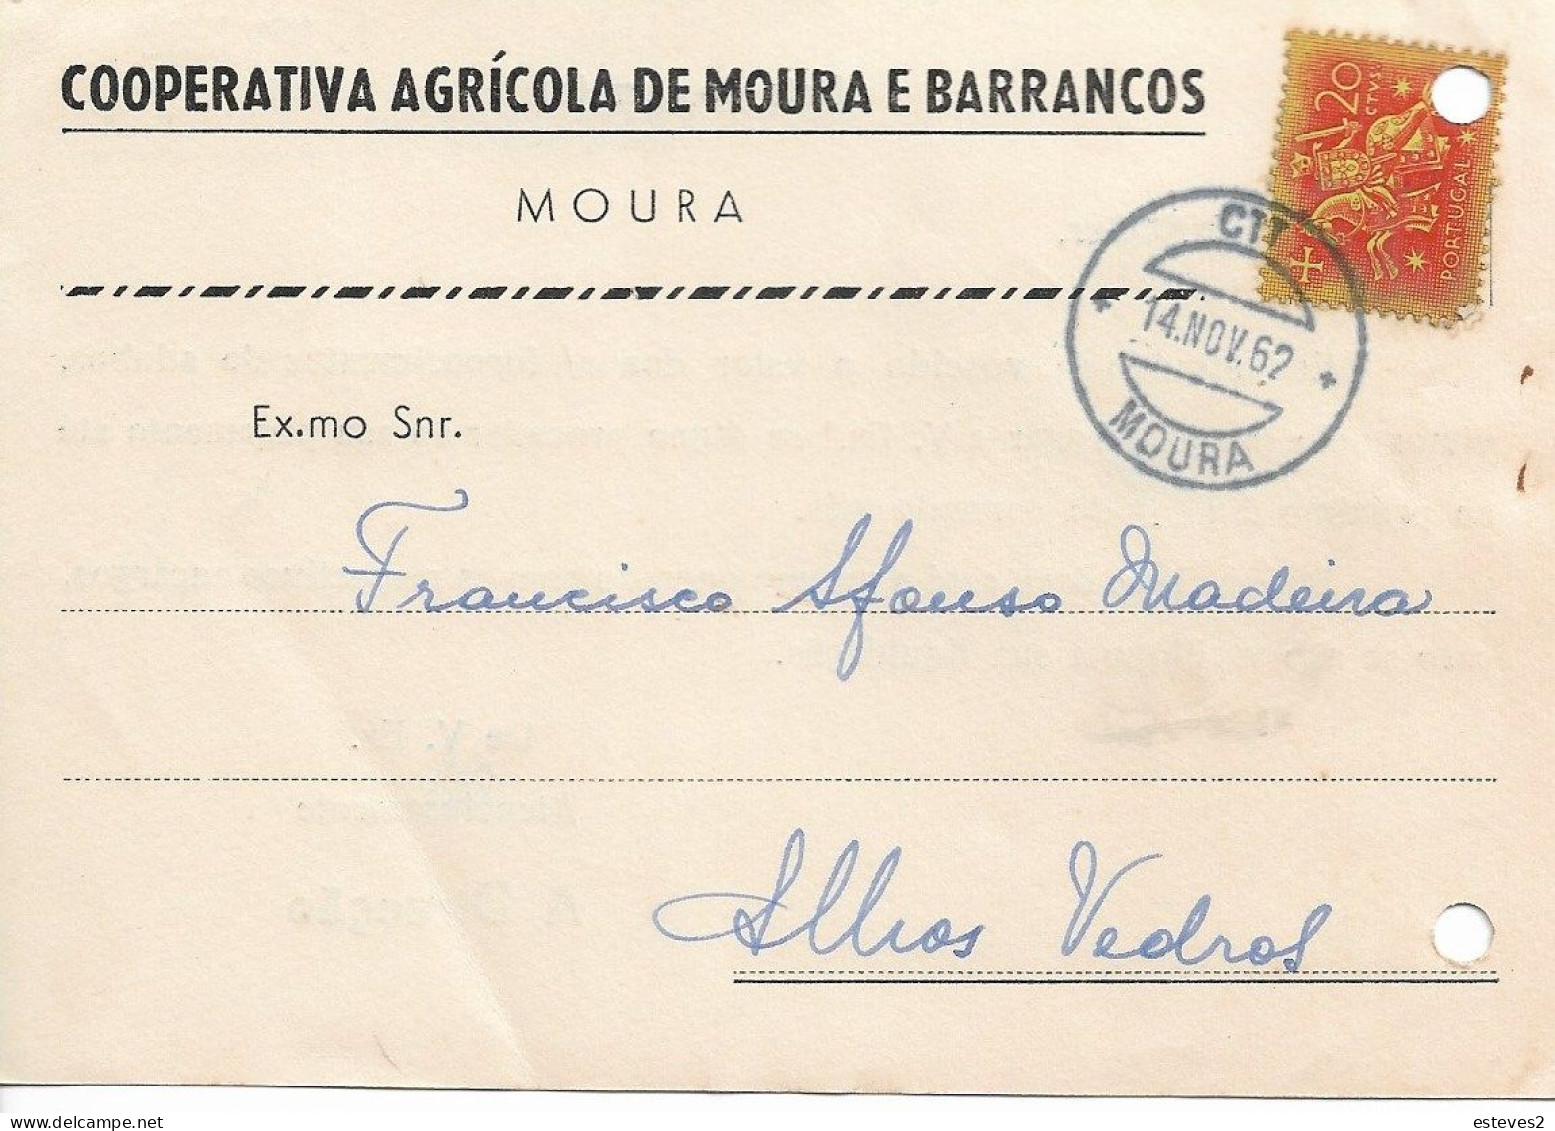 Portugal , 1962 ,  COOPERATIVA AGRÍCOLA  DE MOURA E BARRANCOS  ,  Moura  Postmark , Commercial Mail - Portugal